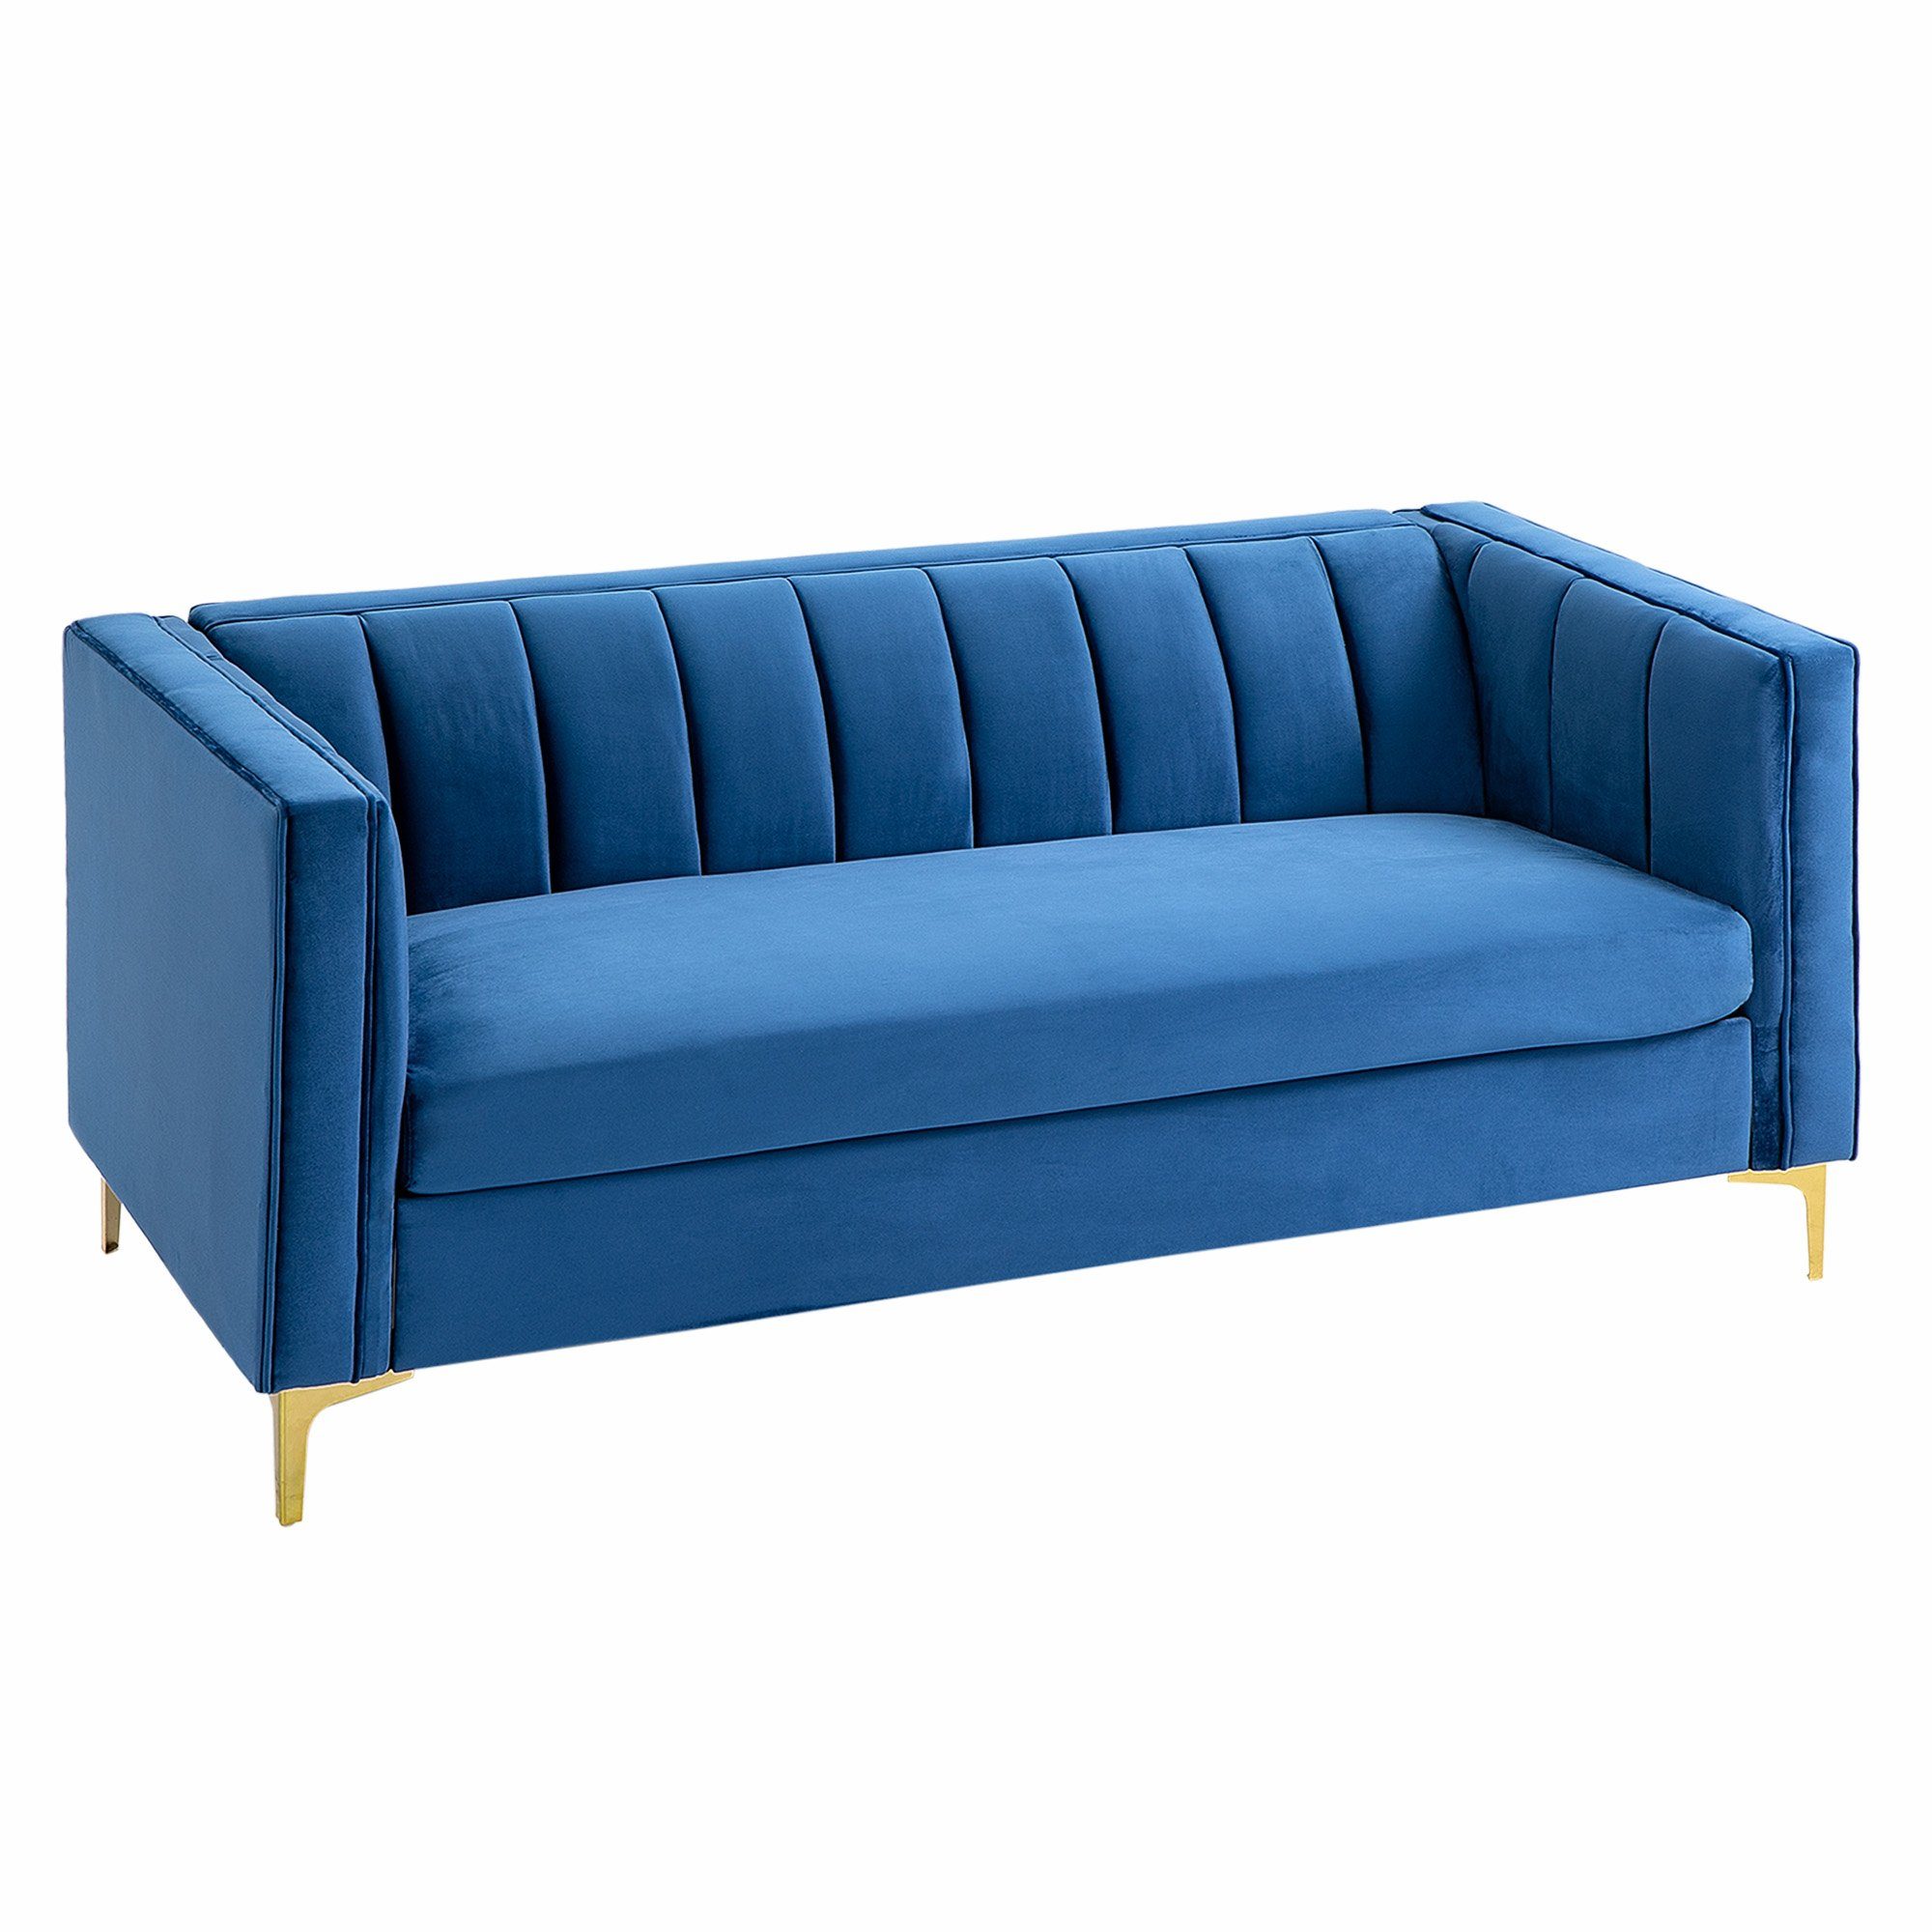 HOMCOM 3-Sitzer »-Sofa«, Hochbelastbare, goldfarbene Stahlbeine verleihen  ihm eine robuste und solide Basis online kaufen | OTTO